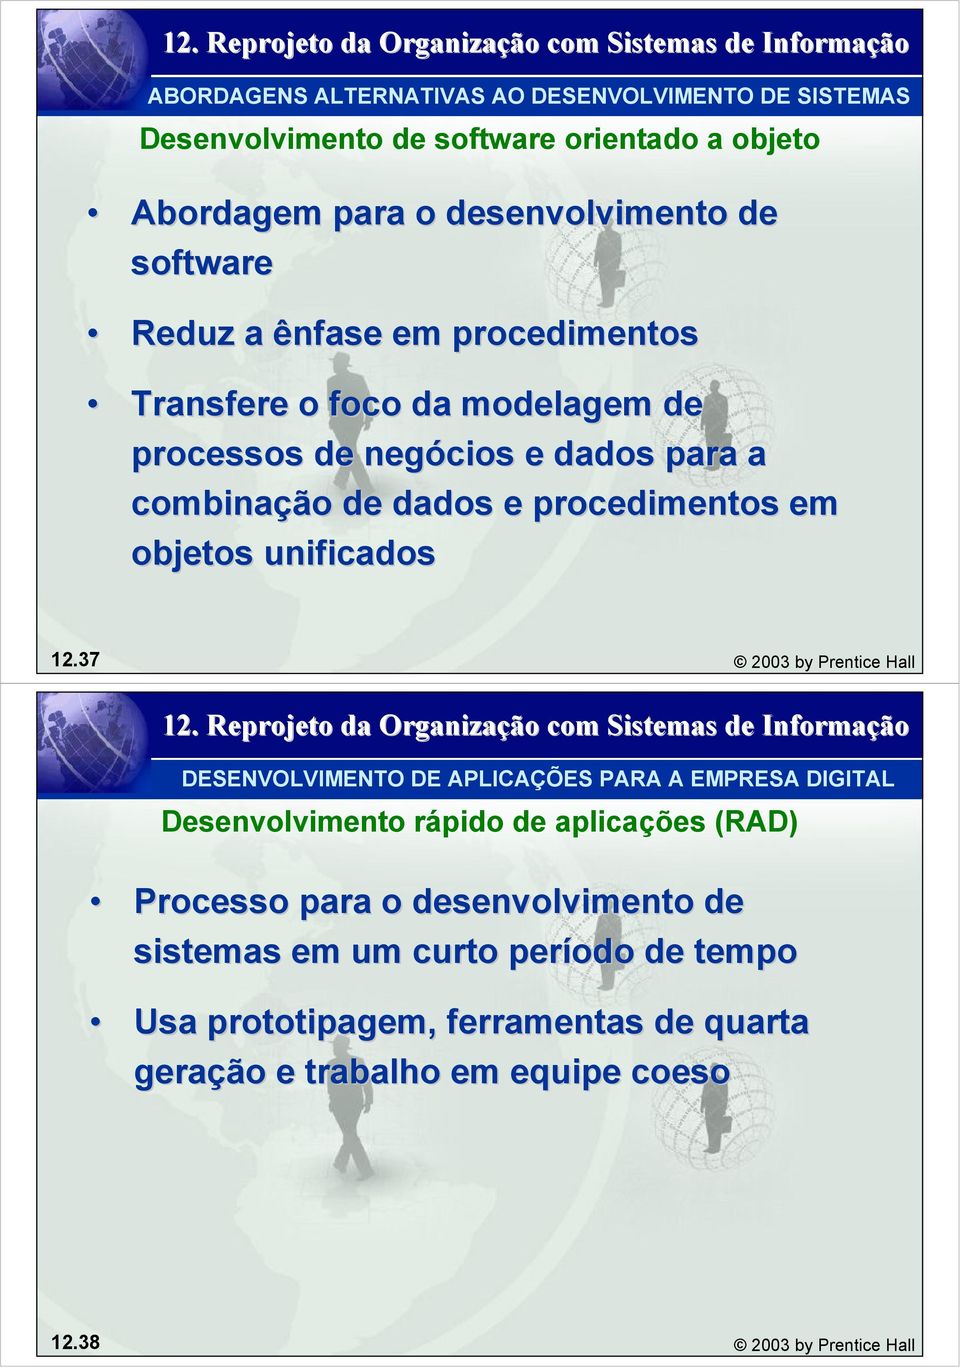 37 2003 by Prentice Hall DESENVOLVIMENTO DE APLICAÇÕES PARA A EMPRESA DIGITAL Desenvolvimento rápido de aplicações (RAD) Processo para o